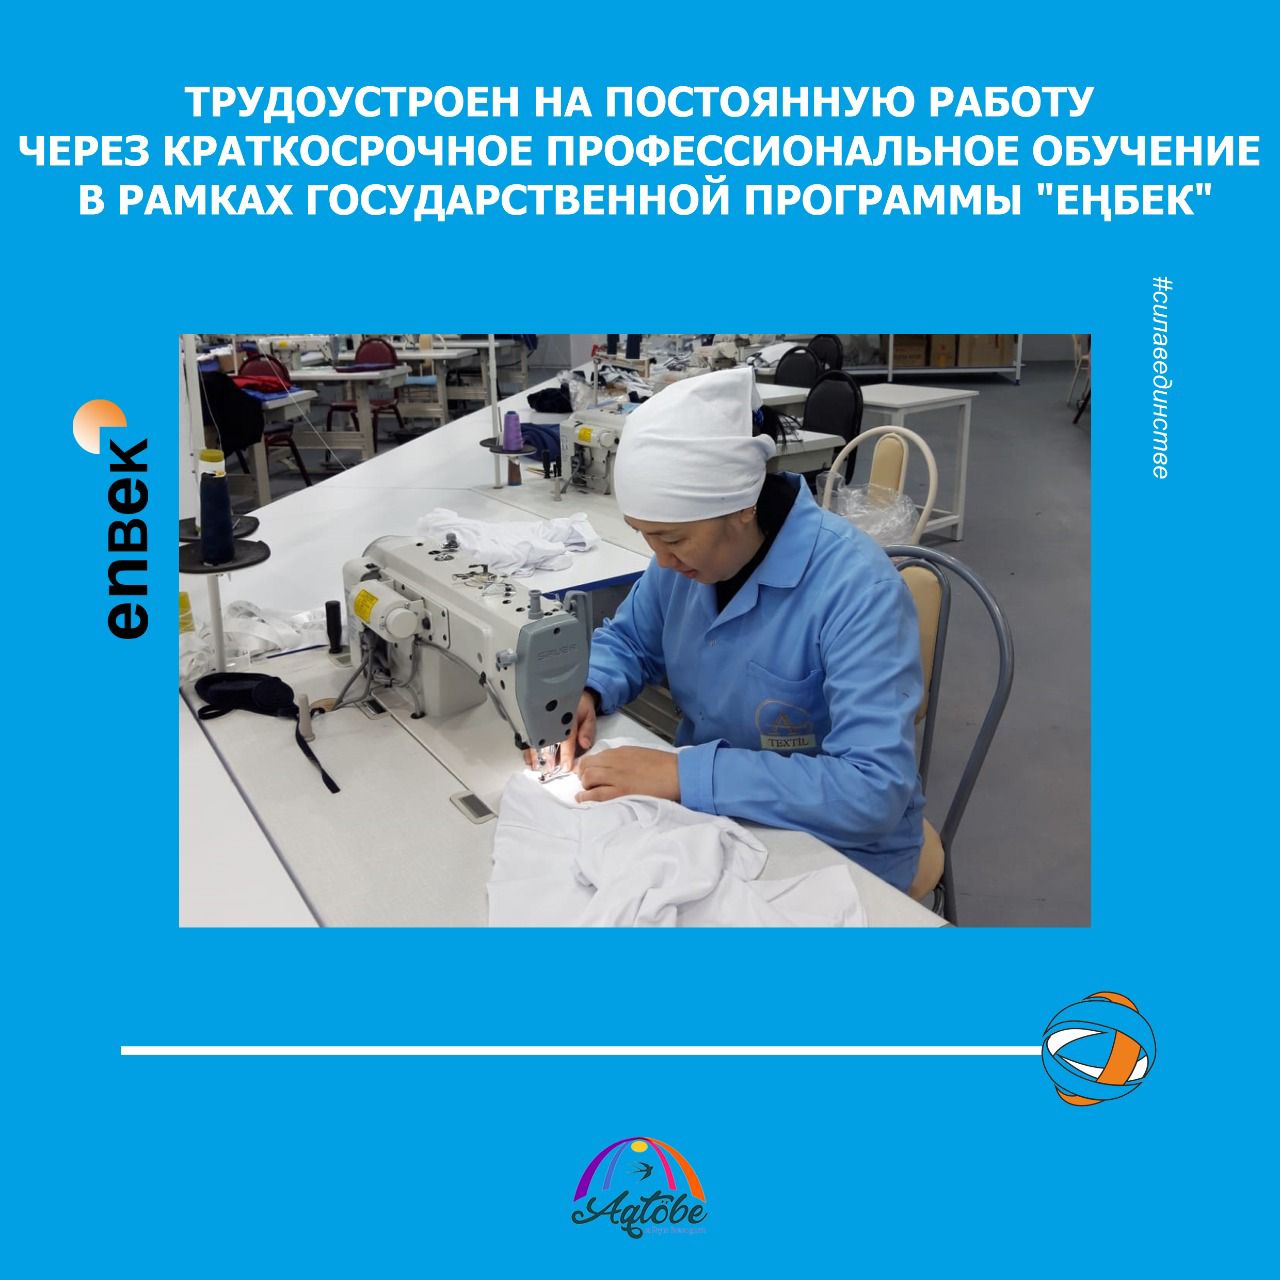 Трудоустроен на постоянную работу через краткосрочное профессиональное обучение в рамках государственной программы "Еңбек"